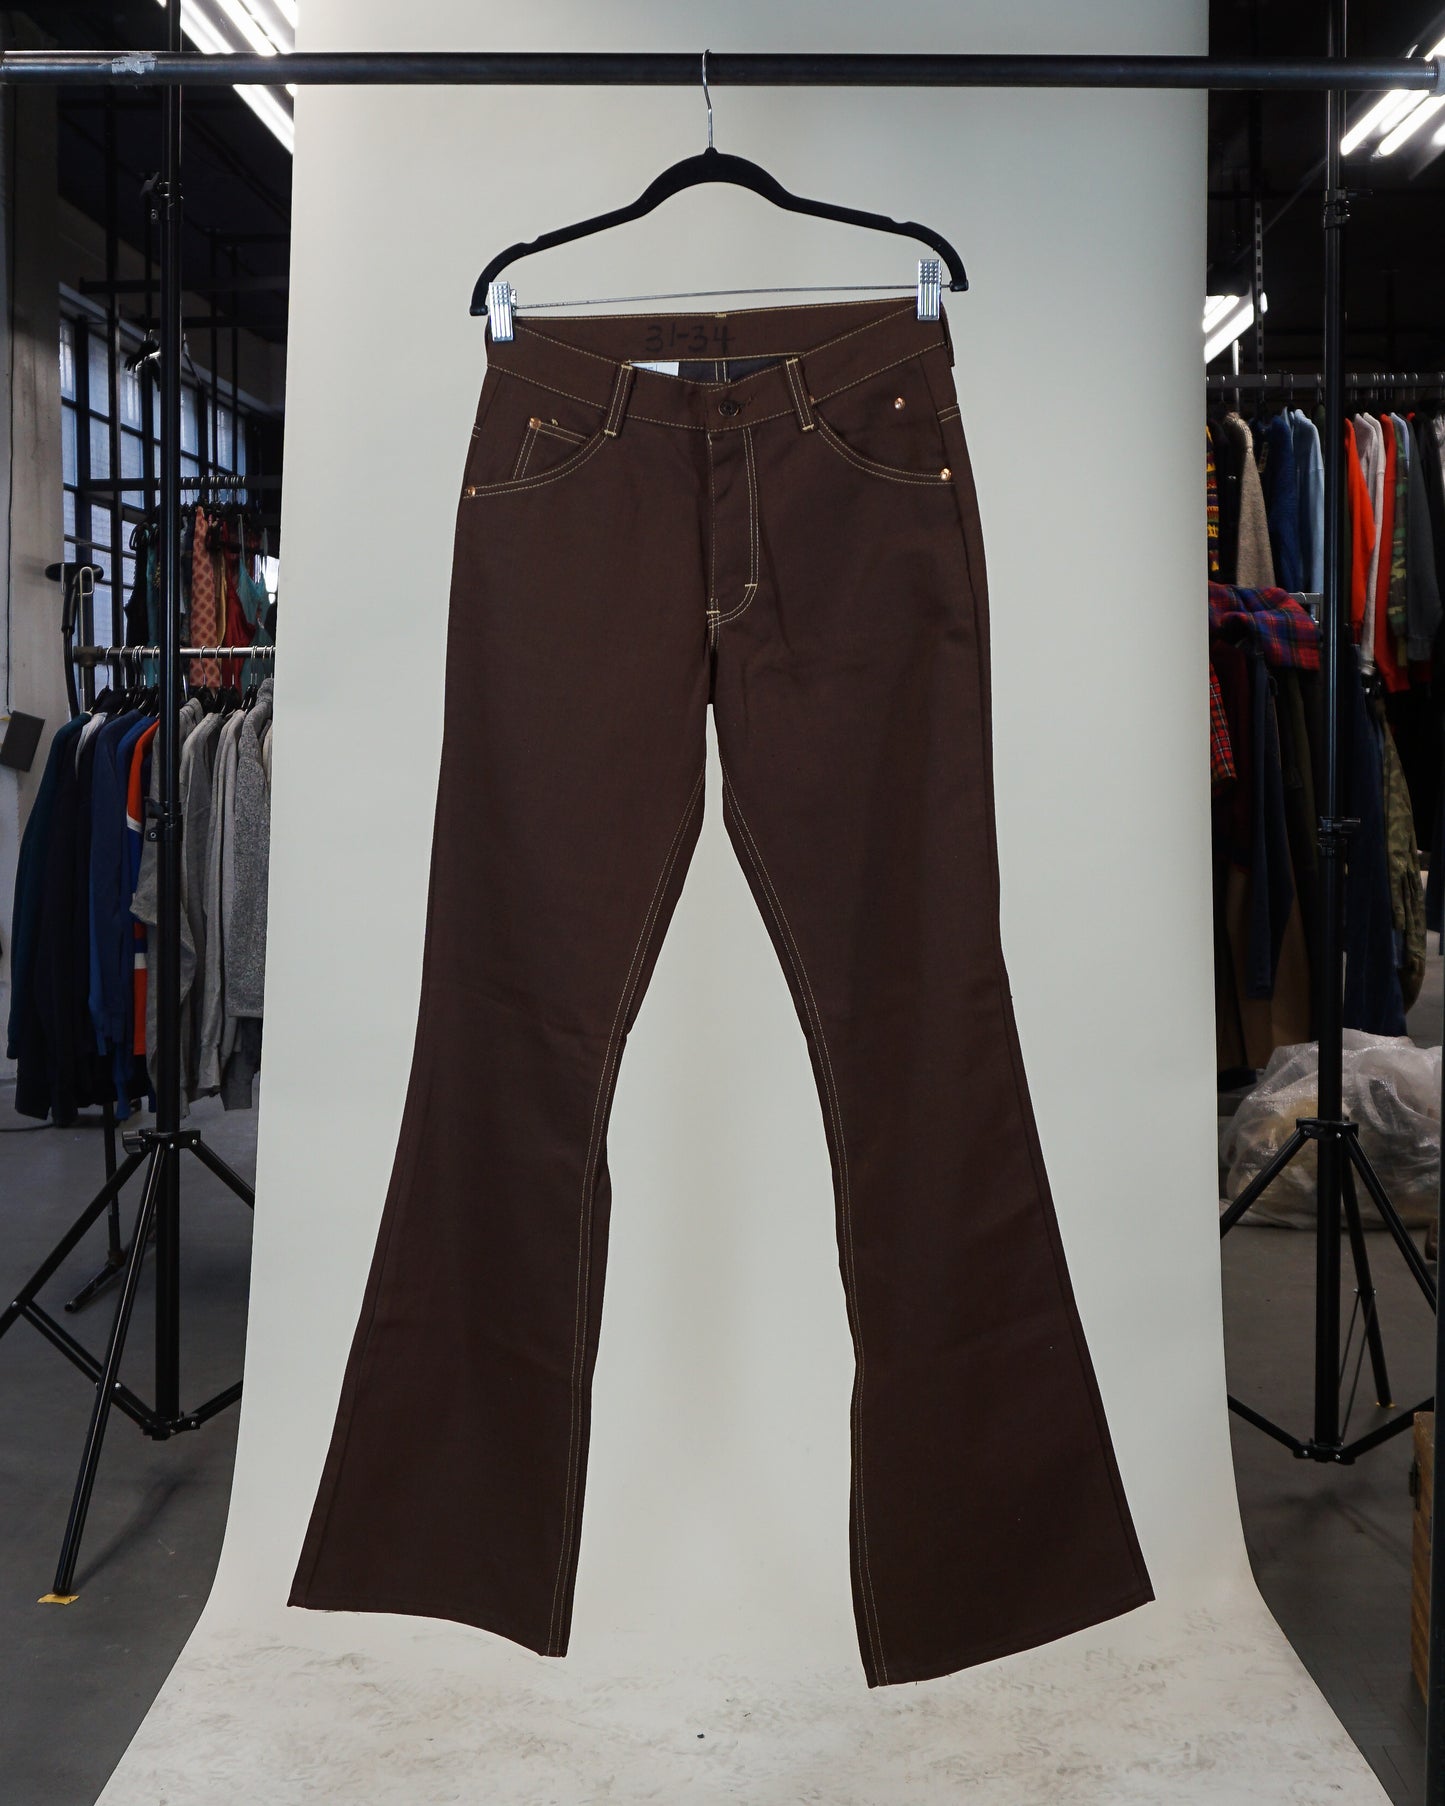 Jeans évasés 'Toughskins' de Sears des années 1970 (28"x32")